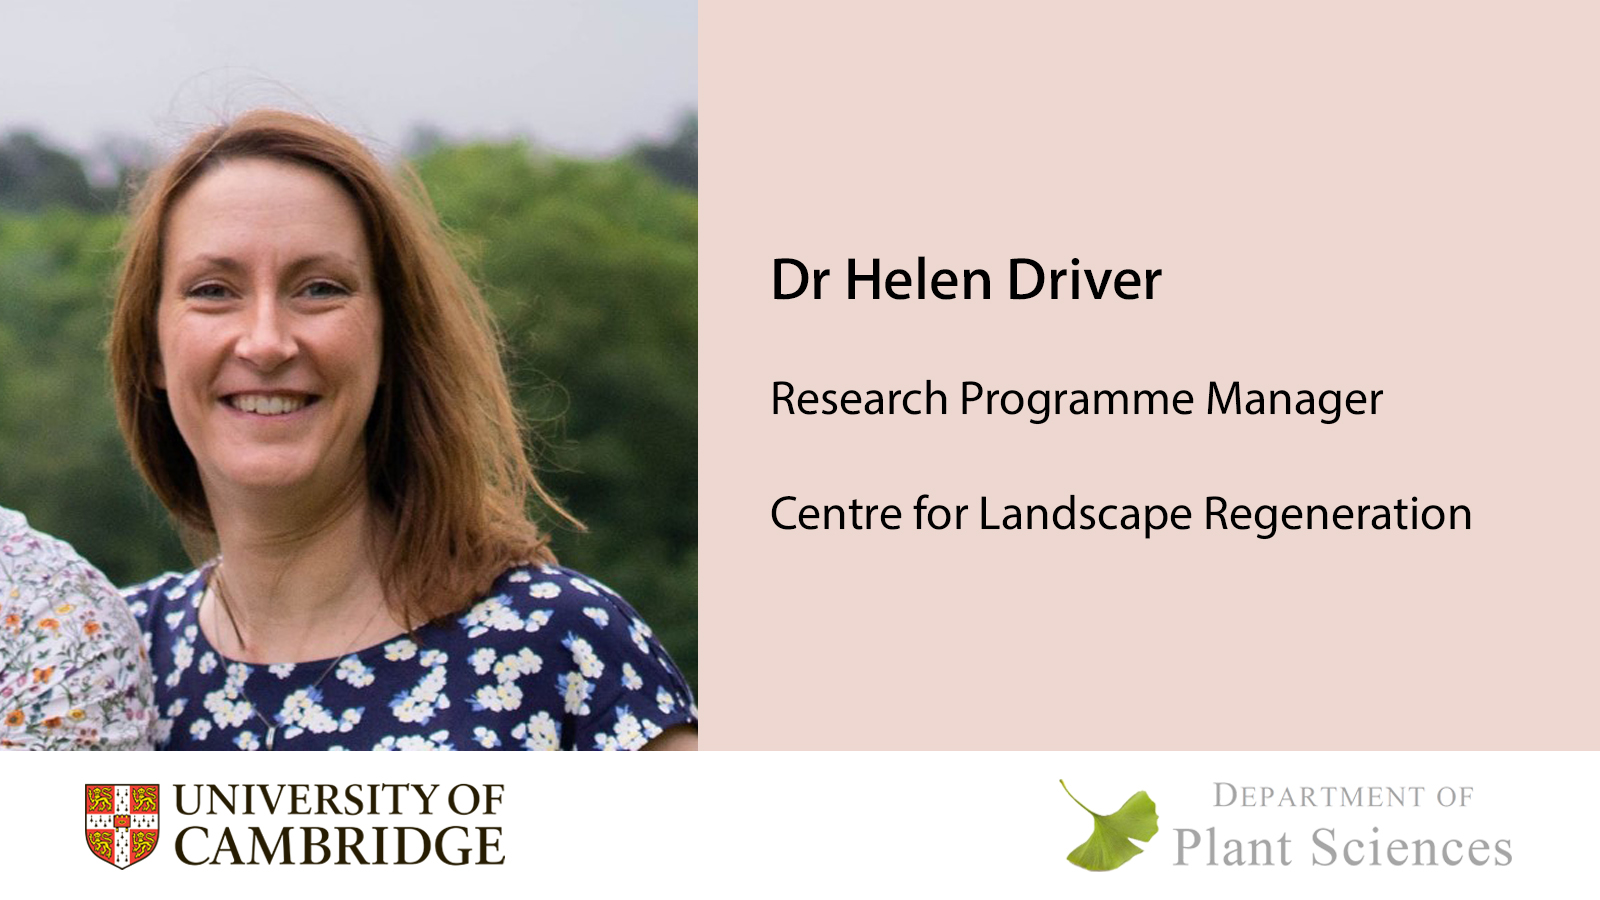 Dr Helen Driver